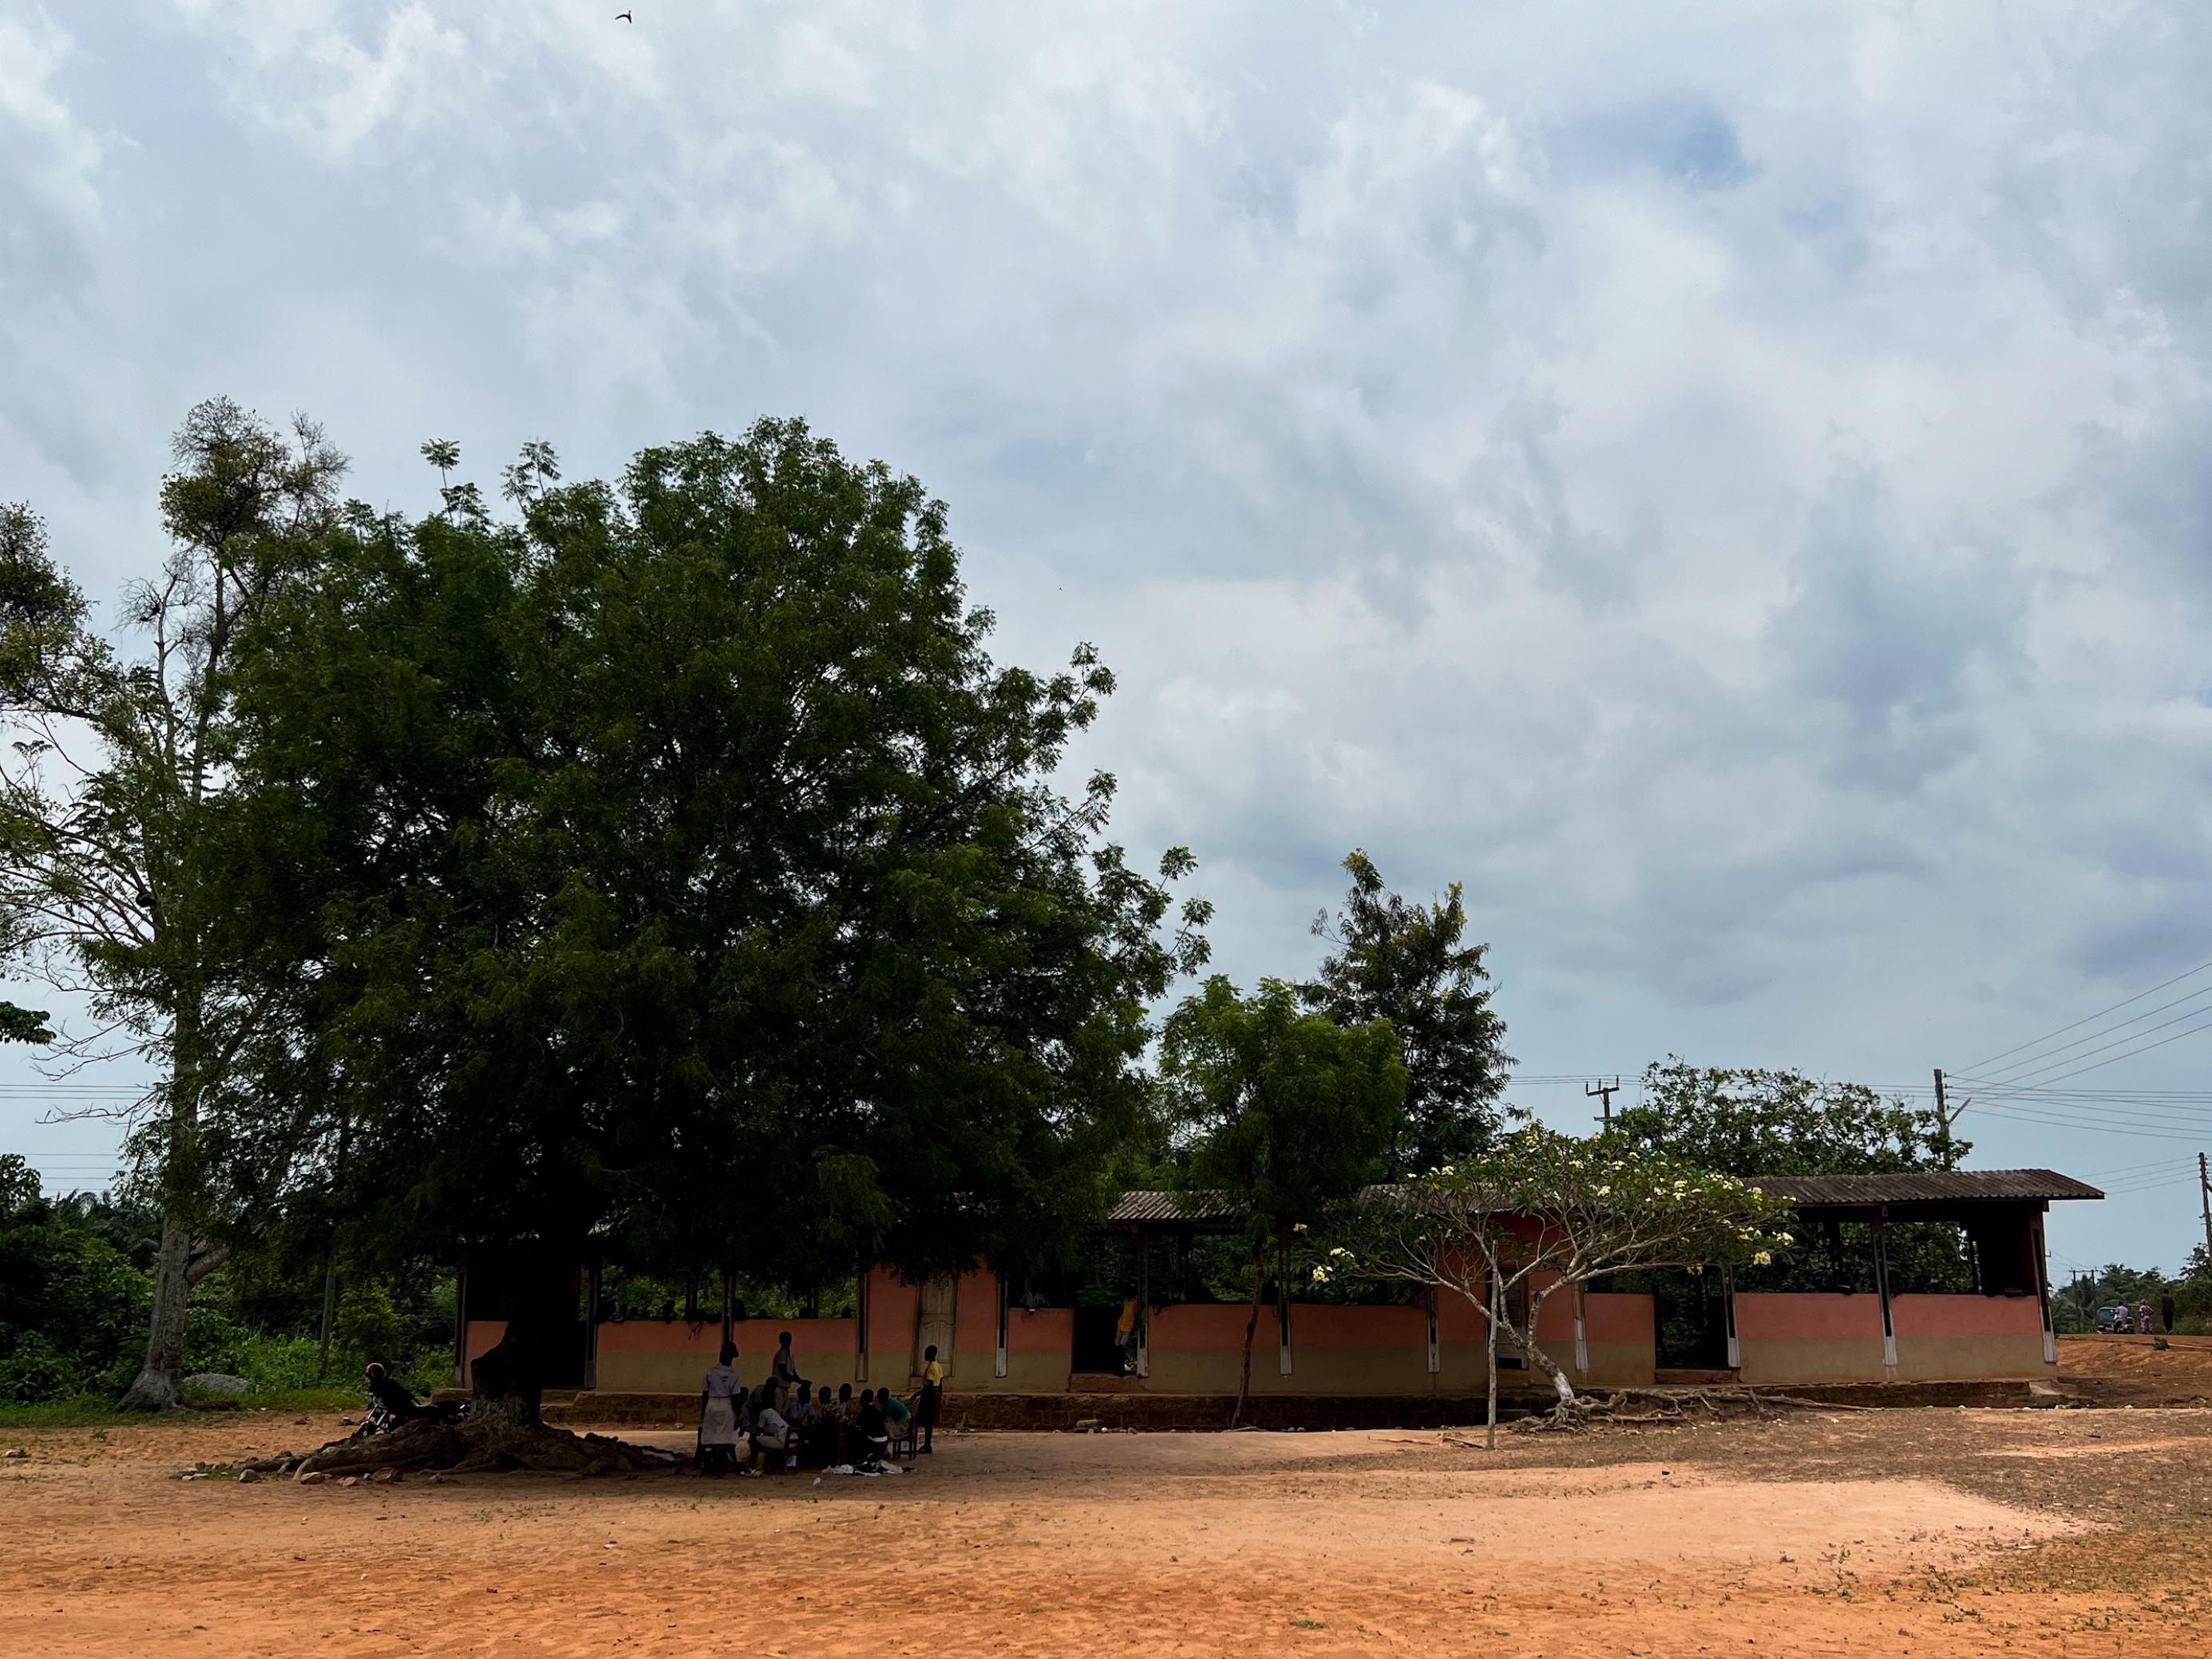 Ein hoher Baum neben einem flachen Schulgebäude, das aus einem Riegel besteht. Der Baum lässt das Gebäude noch kleiner aussehen. Im Schatten des Baumes sitzen einige Schülerinnen und Schüler in ihren gelb-braunen Schuluniformen.